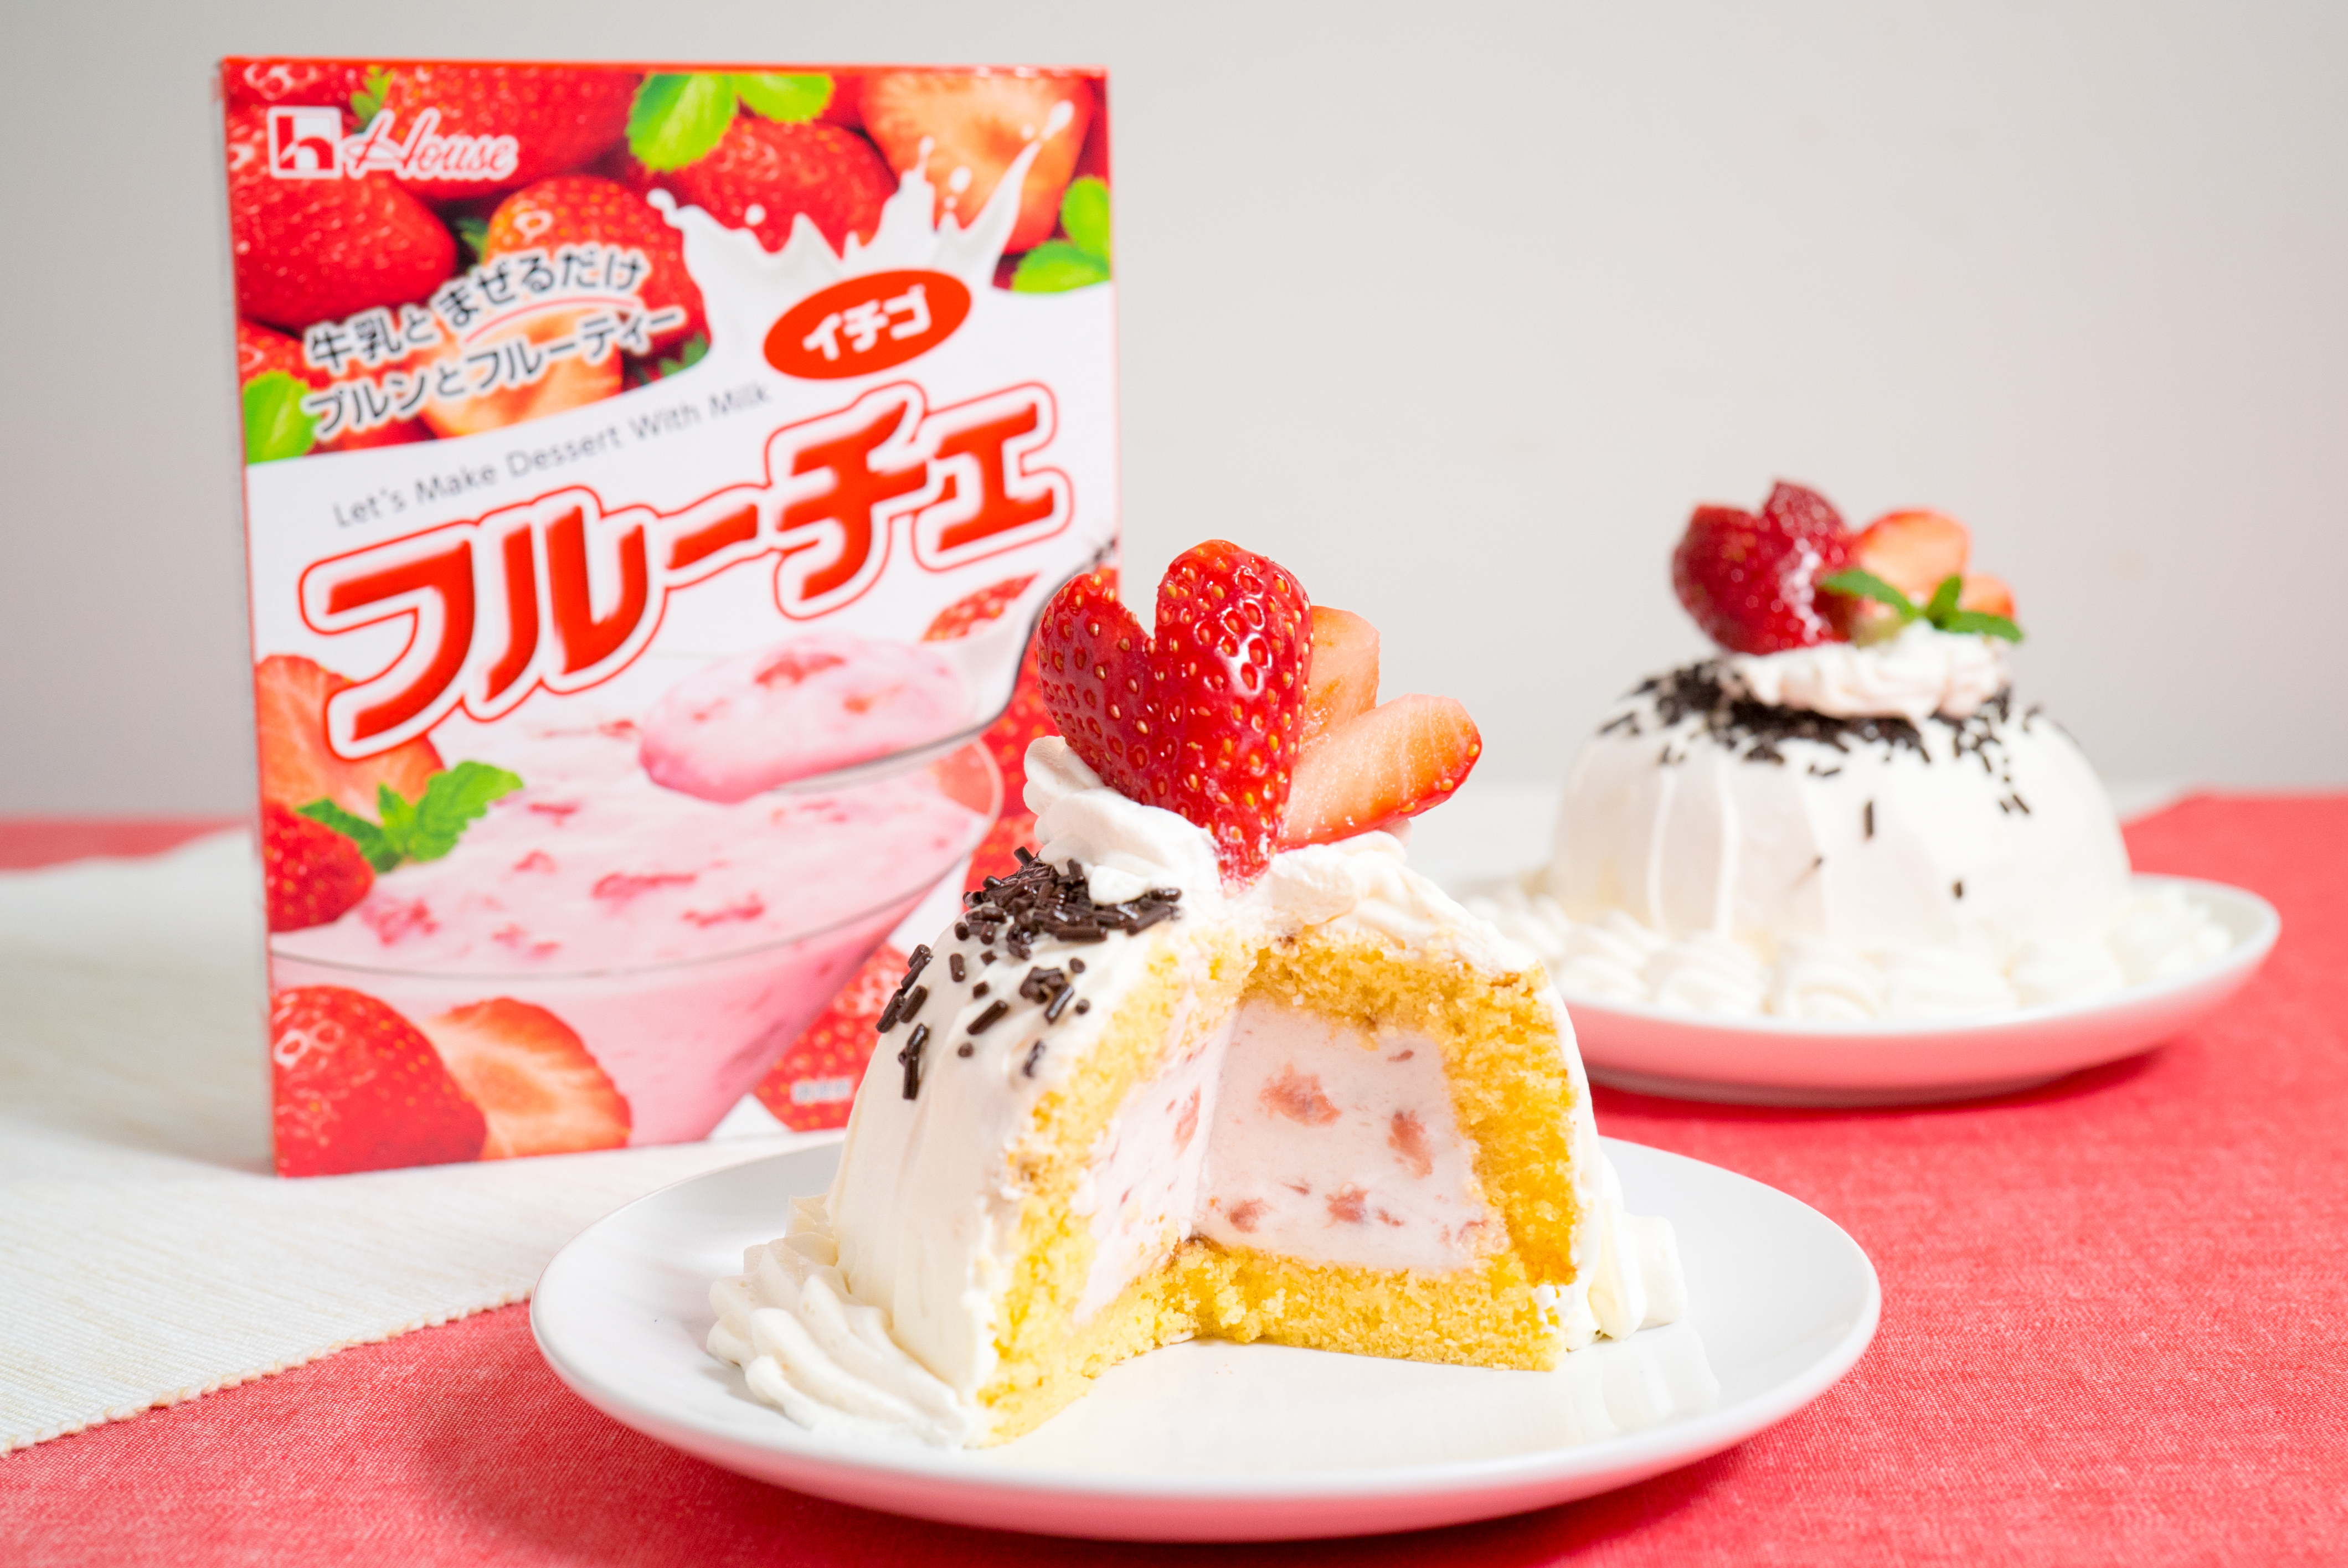 語 明日 ボーナス ドーム 型 ムース ケーキ レシピ Sanyuroman Jp